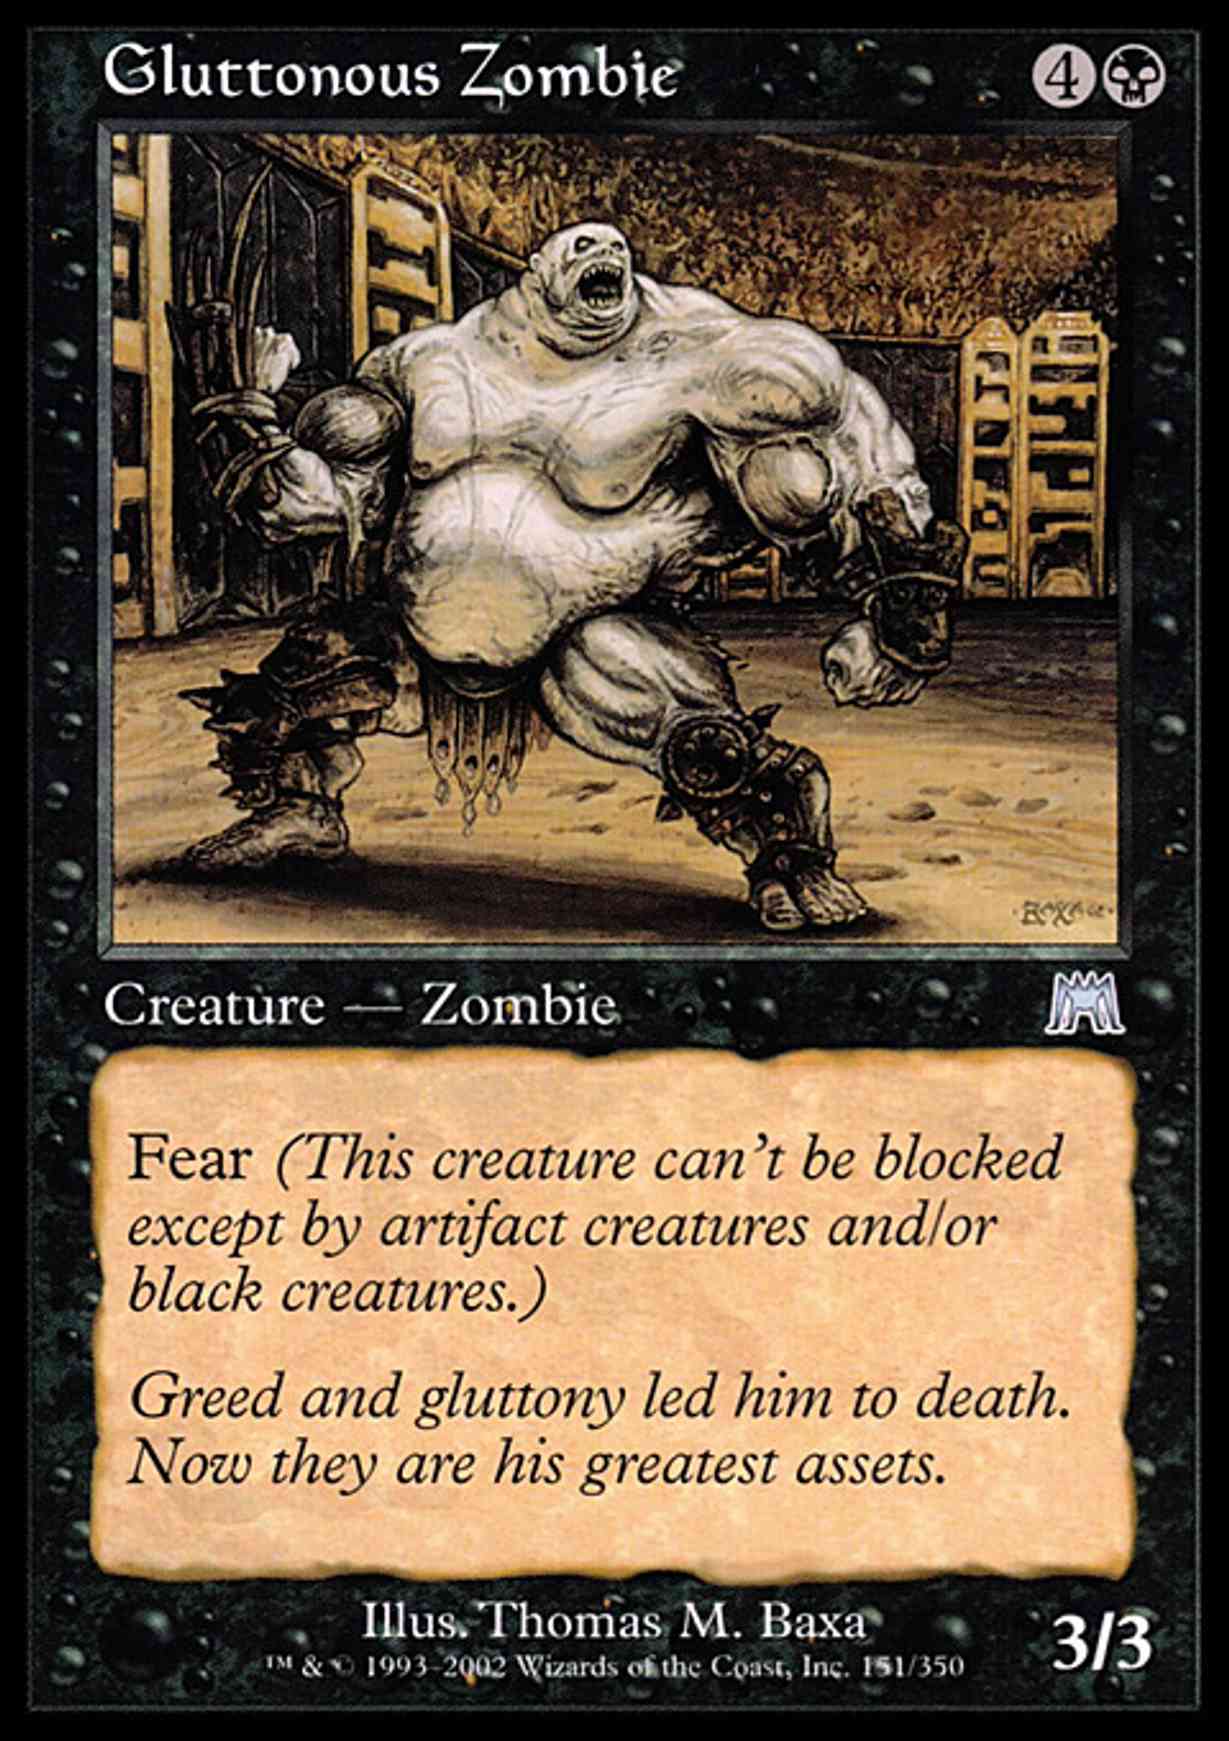 Gluttonous Zombie magic card front